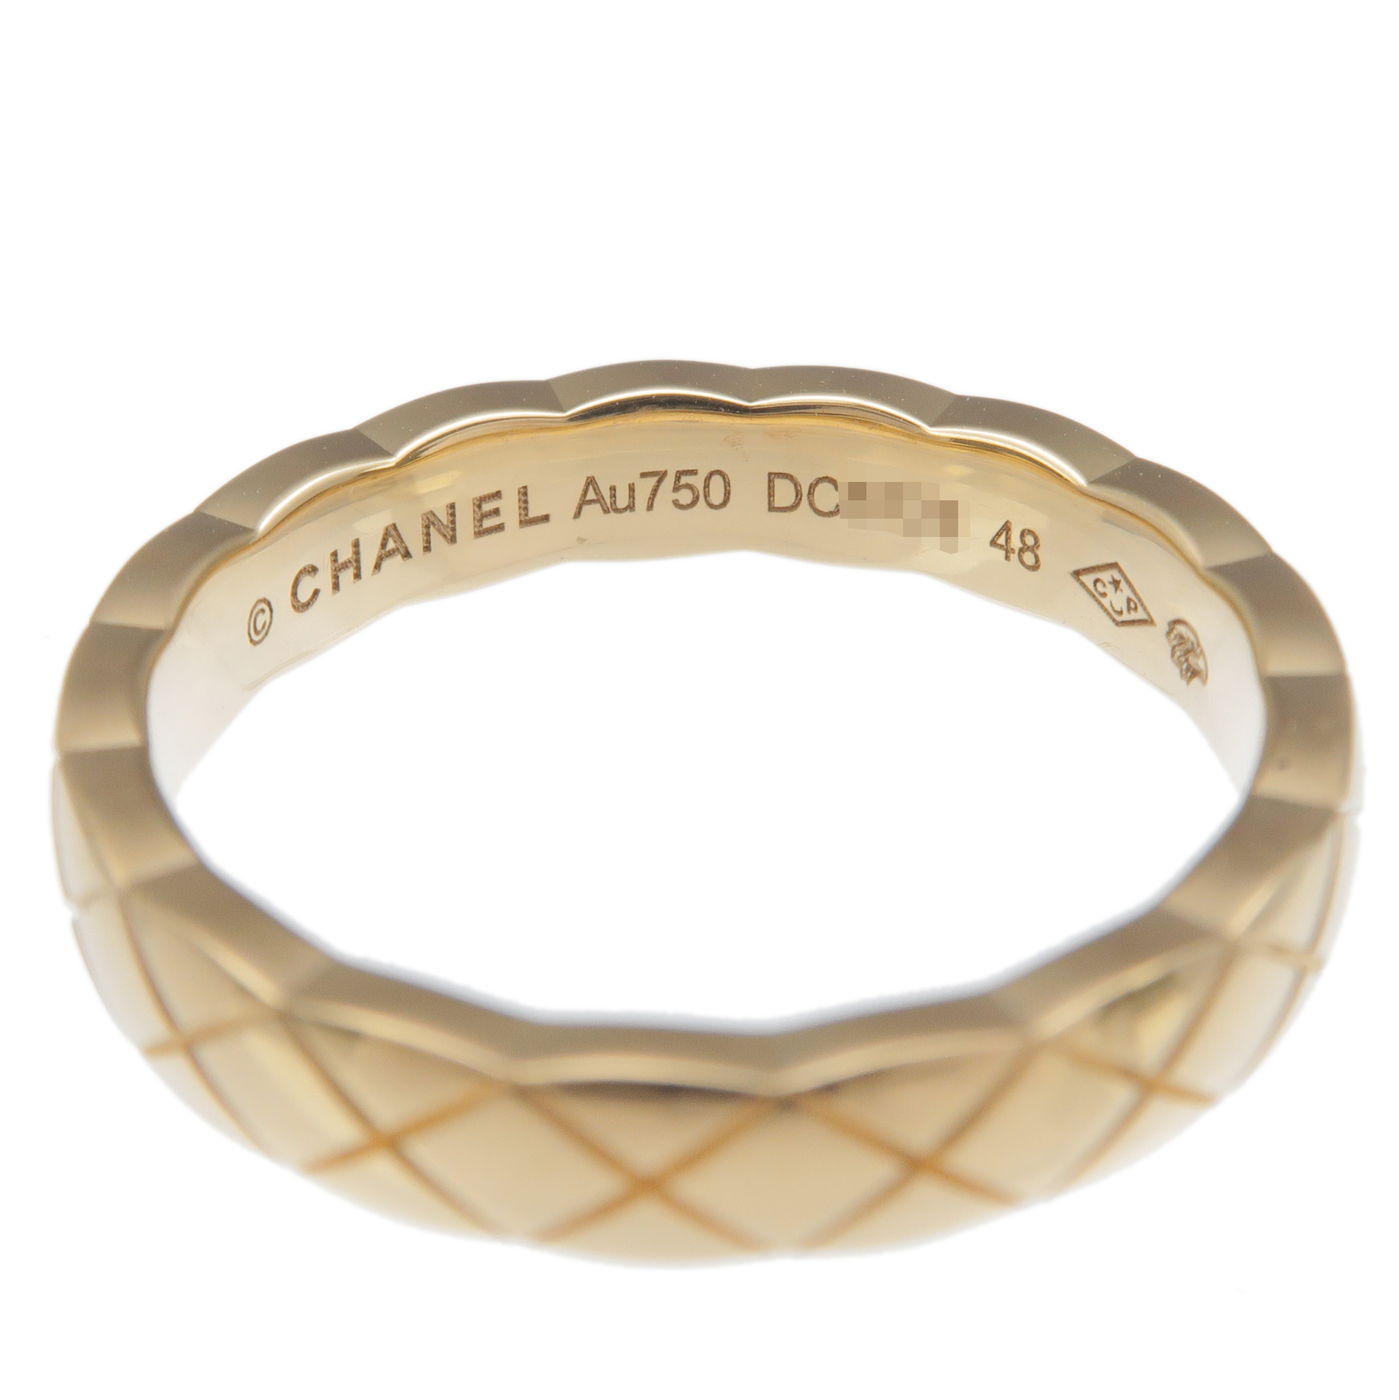 Chanel coco crush mini ring